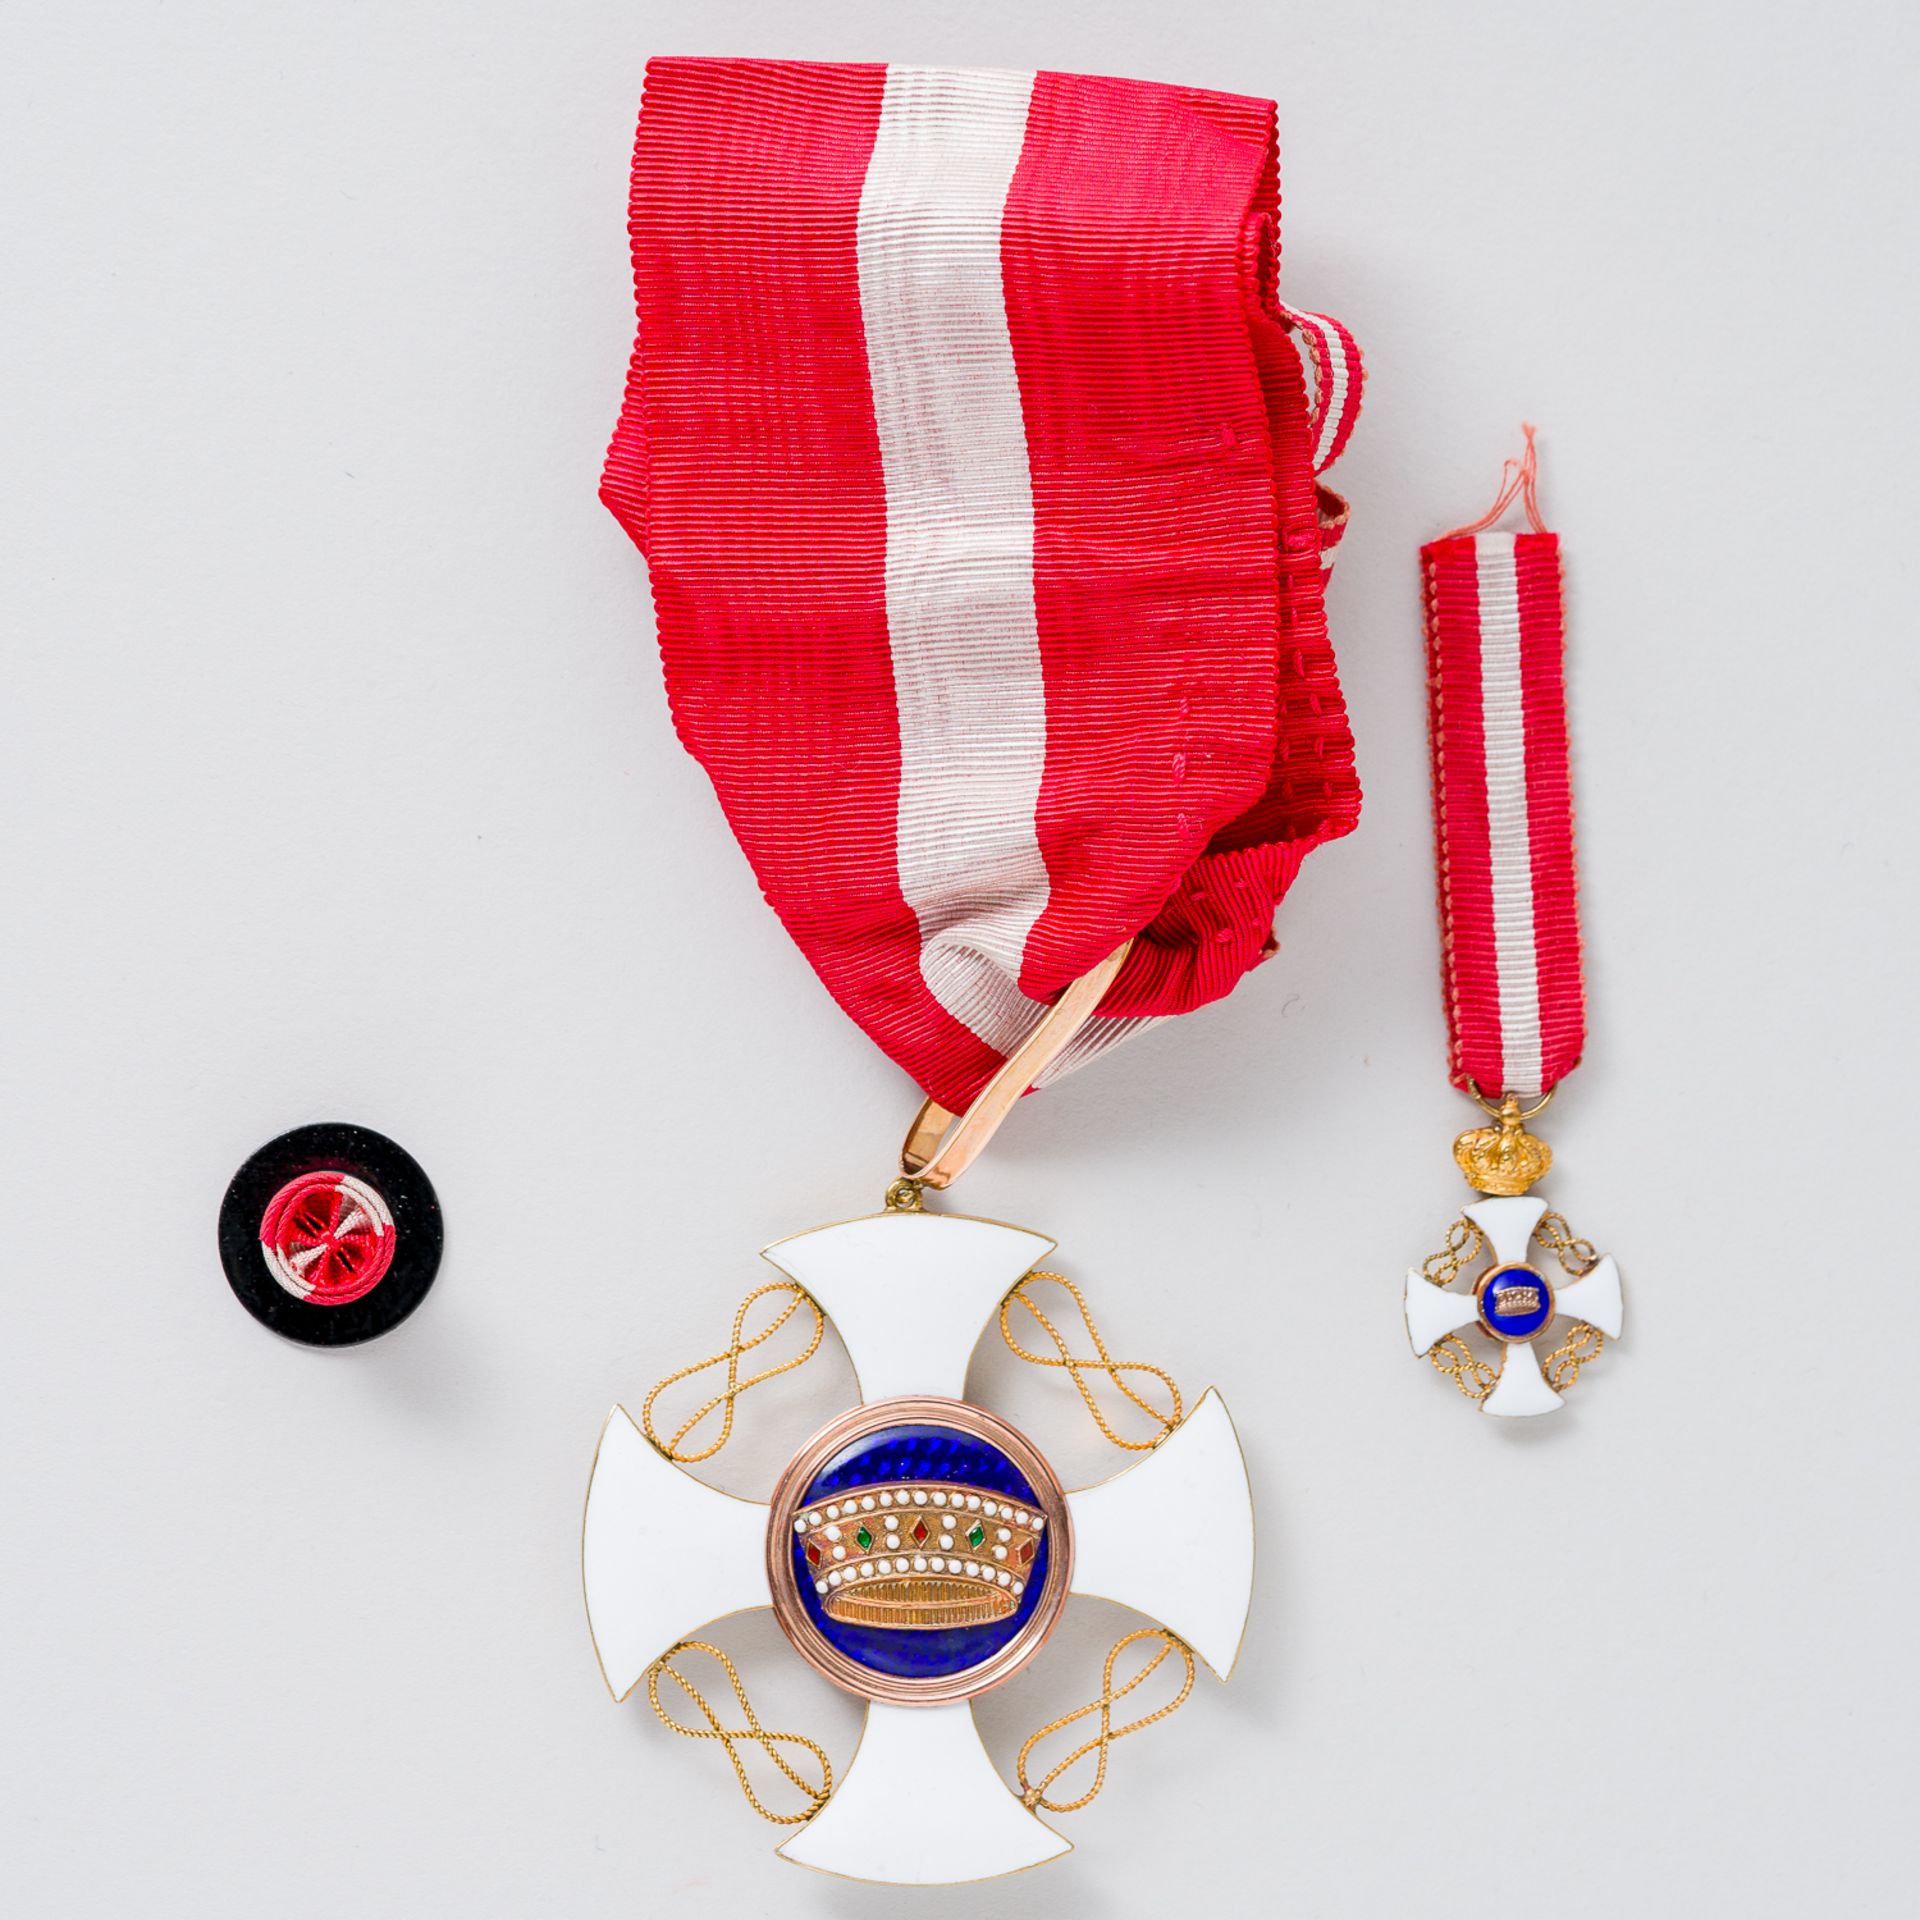 Orden der Krone von Italien Ordine della Corona d'Italia Kommandeurskreuz am Band im Etui - Bild 2 aus 4